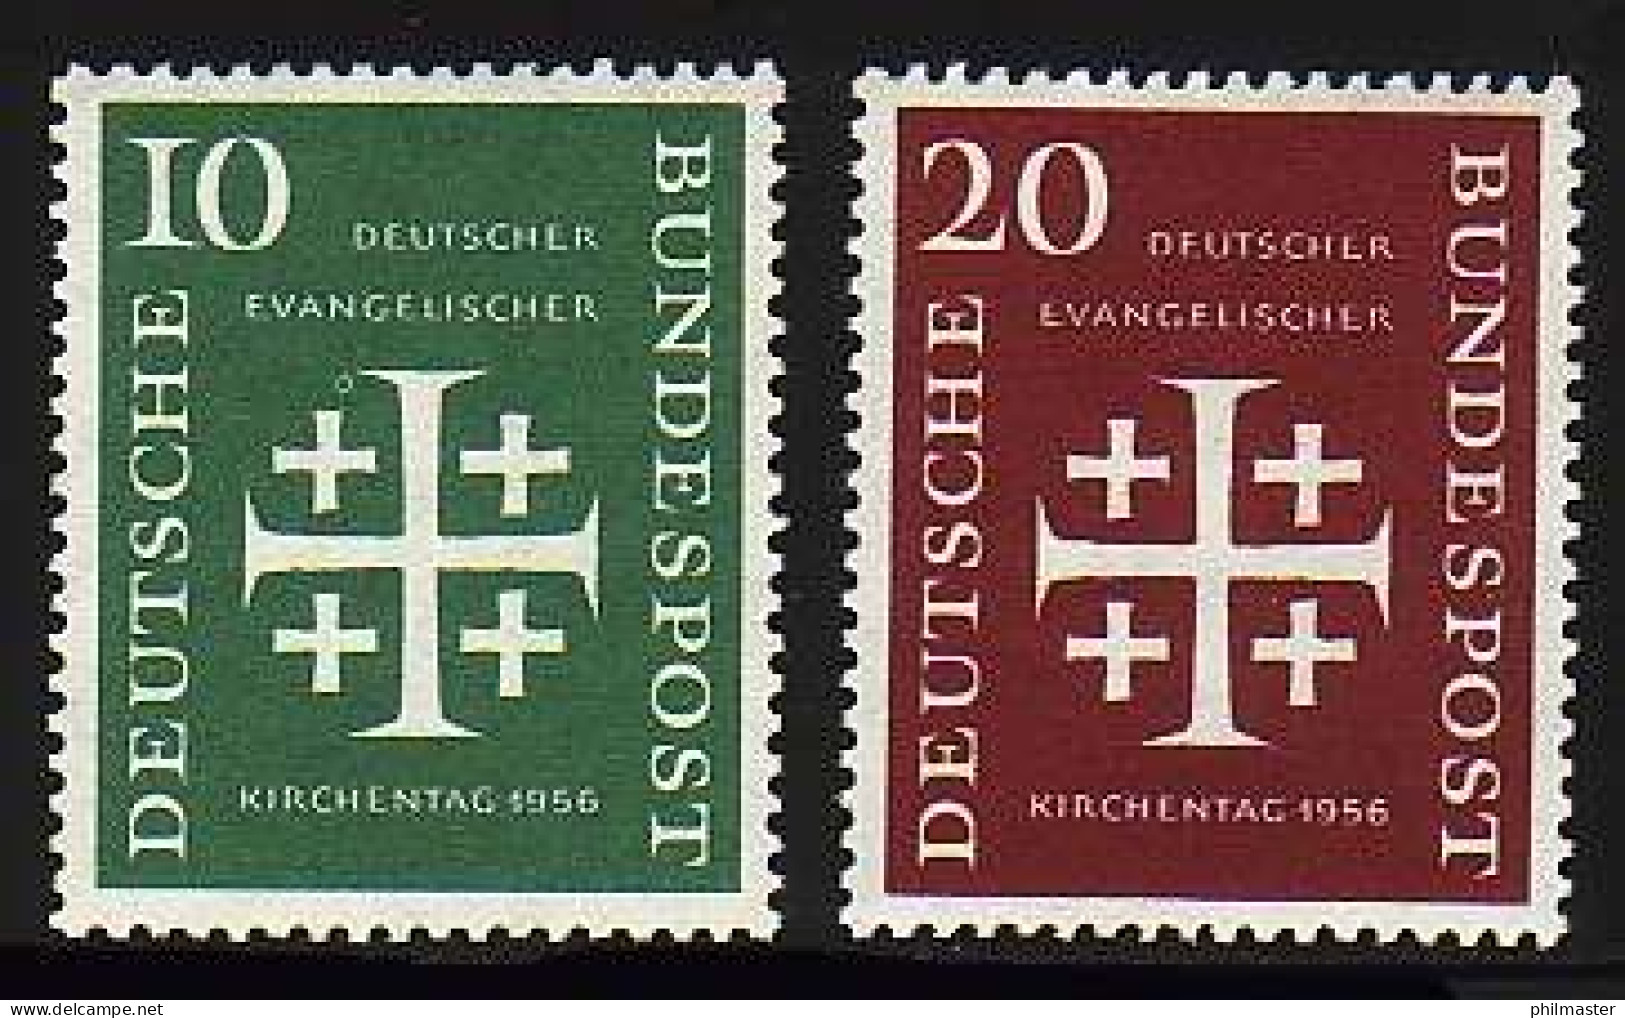 235-236 Evangelischer Kirchentag 1956 - Satz Postfrisch ** - Ongebruikt